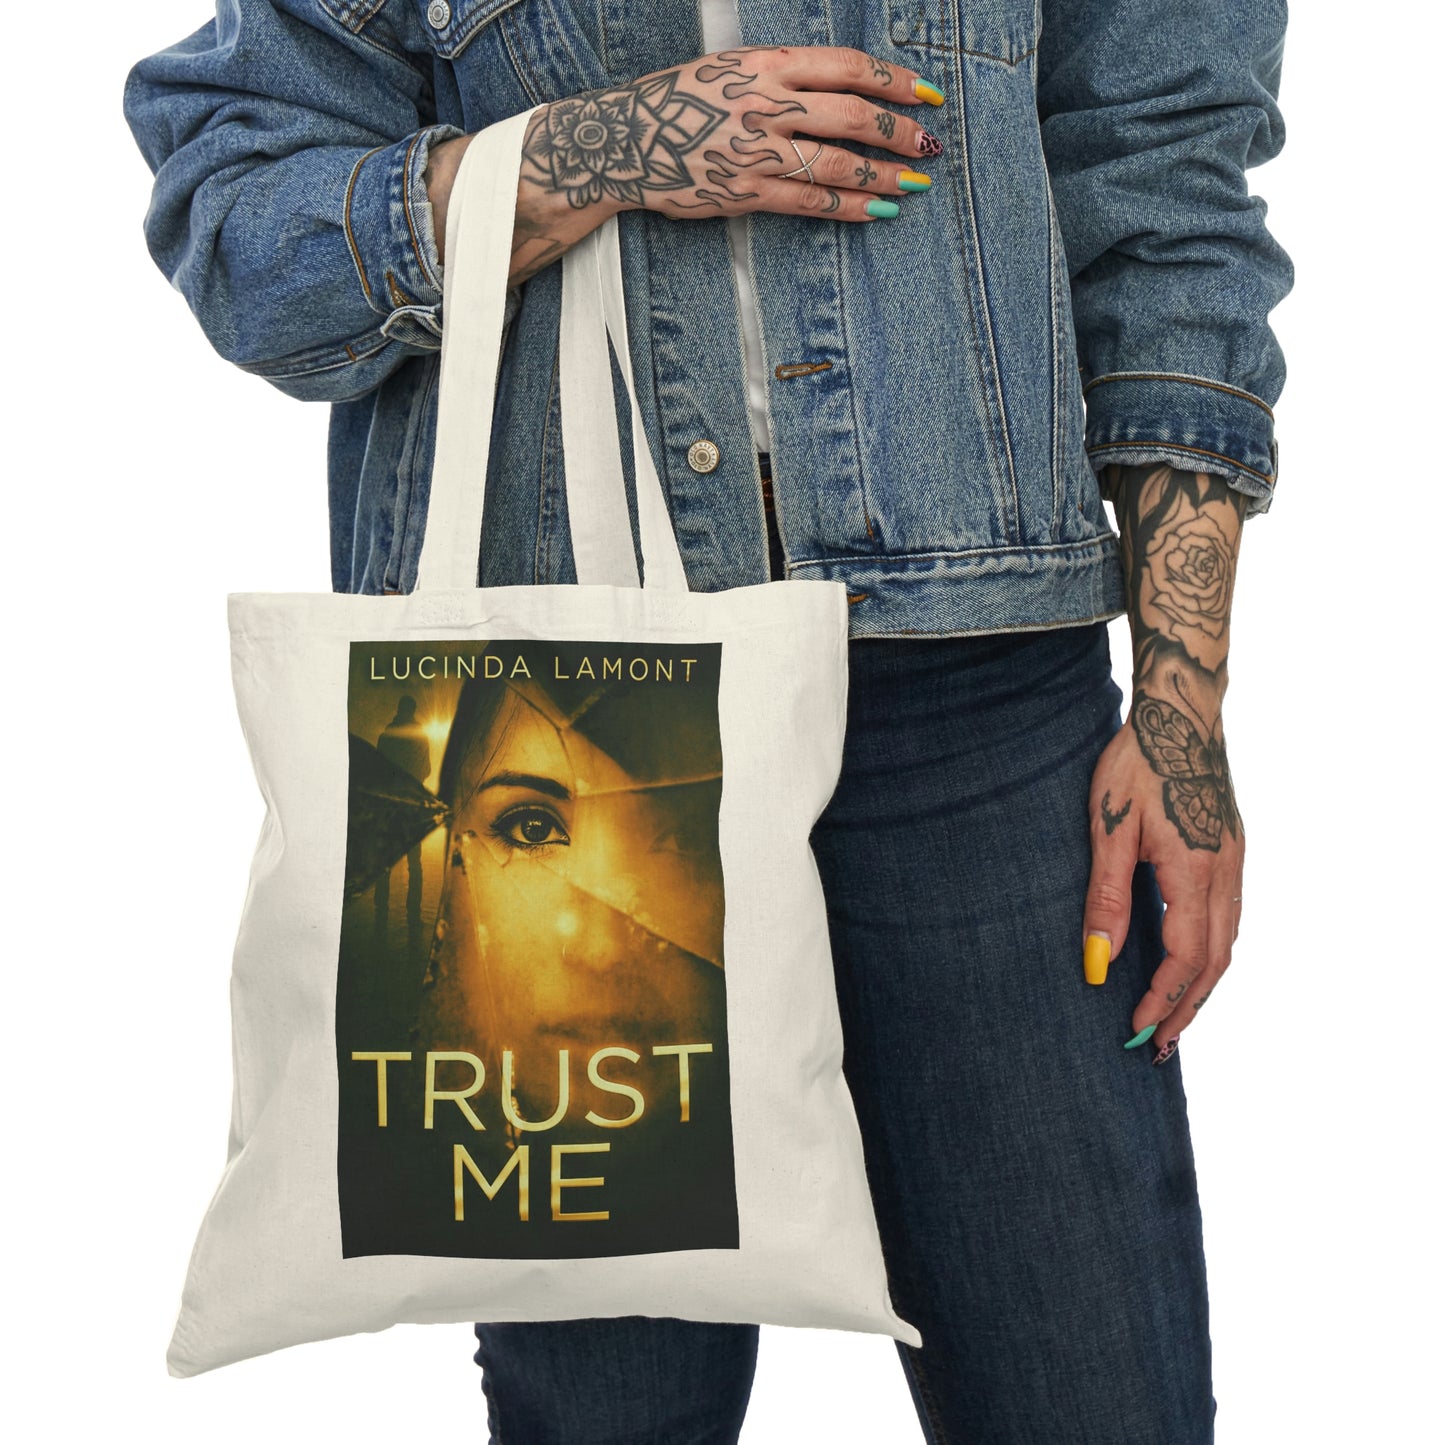 Trust Me - Natural Tote Bag